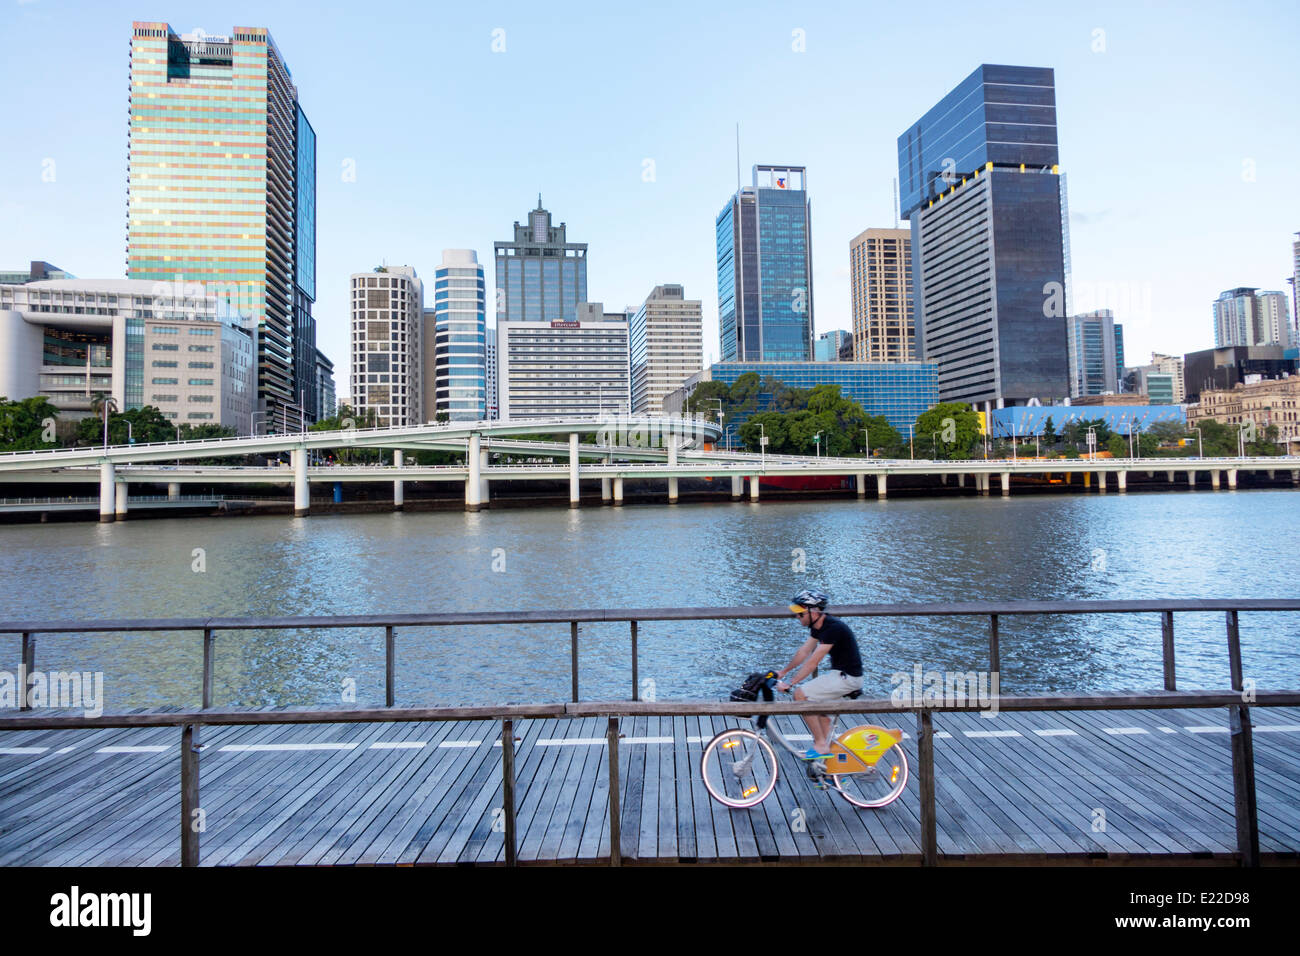 Brisbane Australie CBD,Victoria Bridge,Southbank,ville Skyline,gratte-ciel,bâtiments,homme hommes,vélo,vélo,équitation,vélo,pilote,équitation,CityCycl Banque D'Images